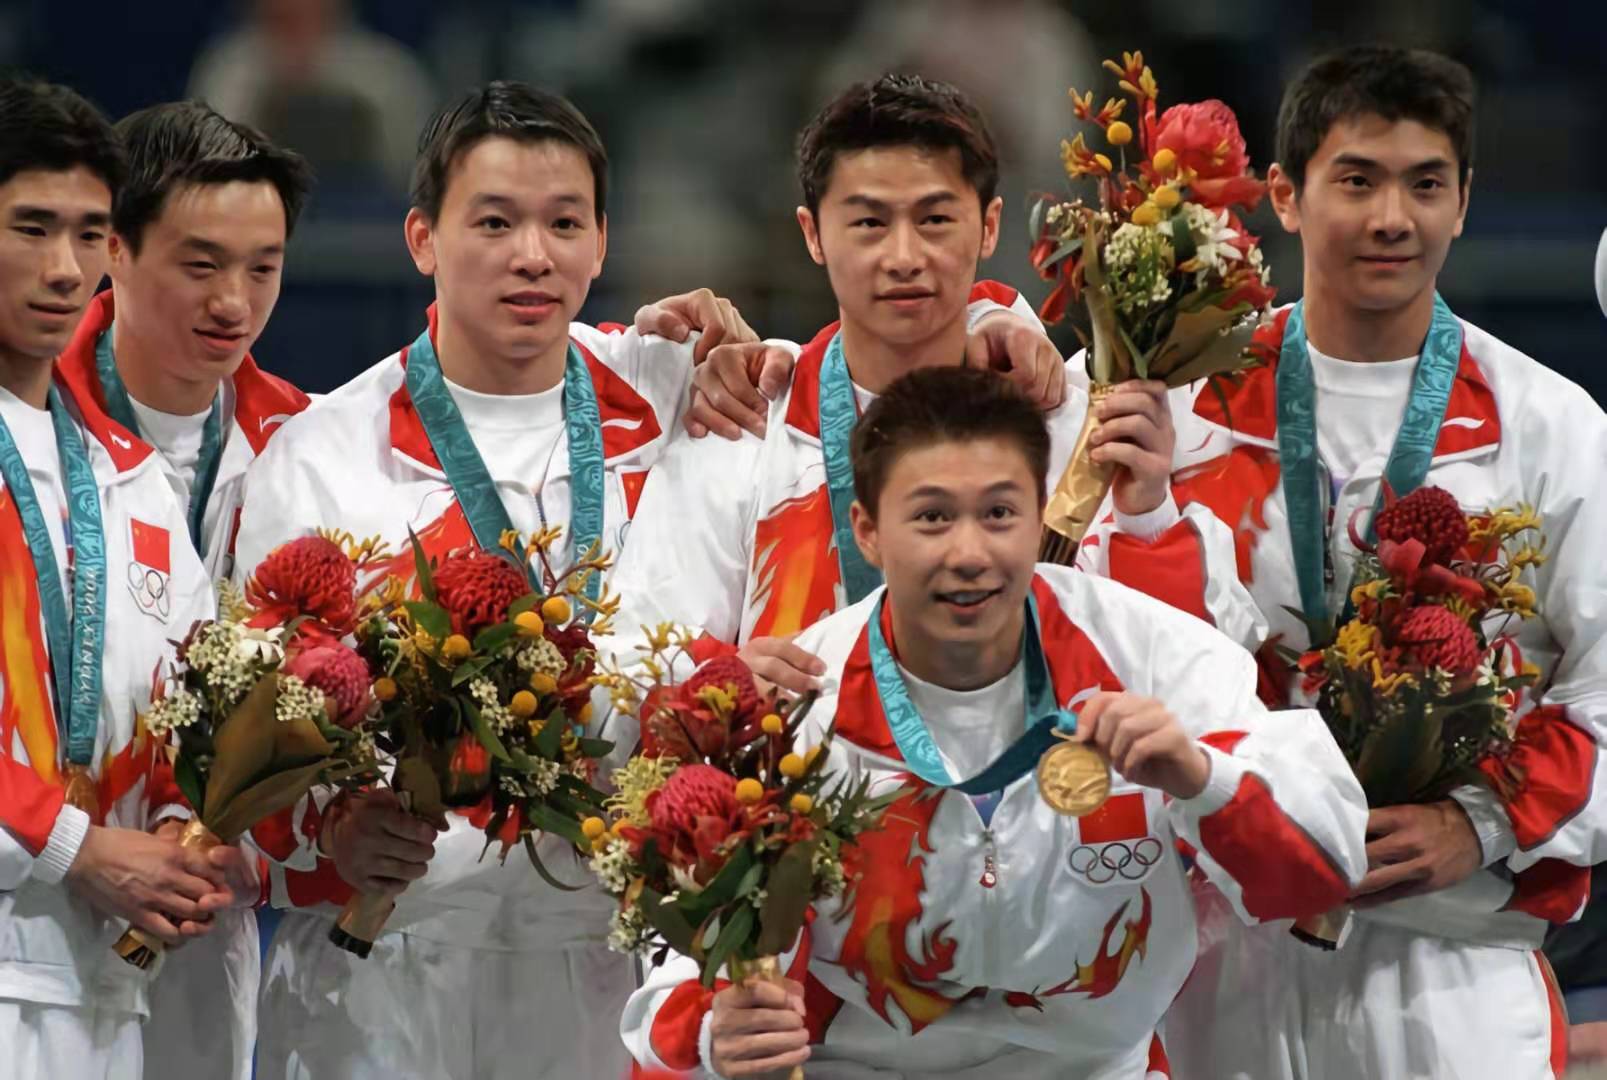 2000年，在悉尼奥运会上，中国男子体操队获得团体冠军。图为冠军成员合影，左三为黄旭。.jpg